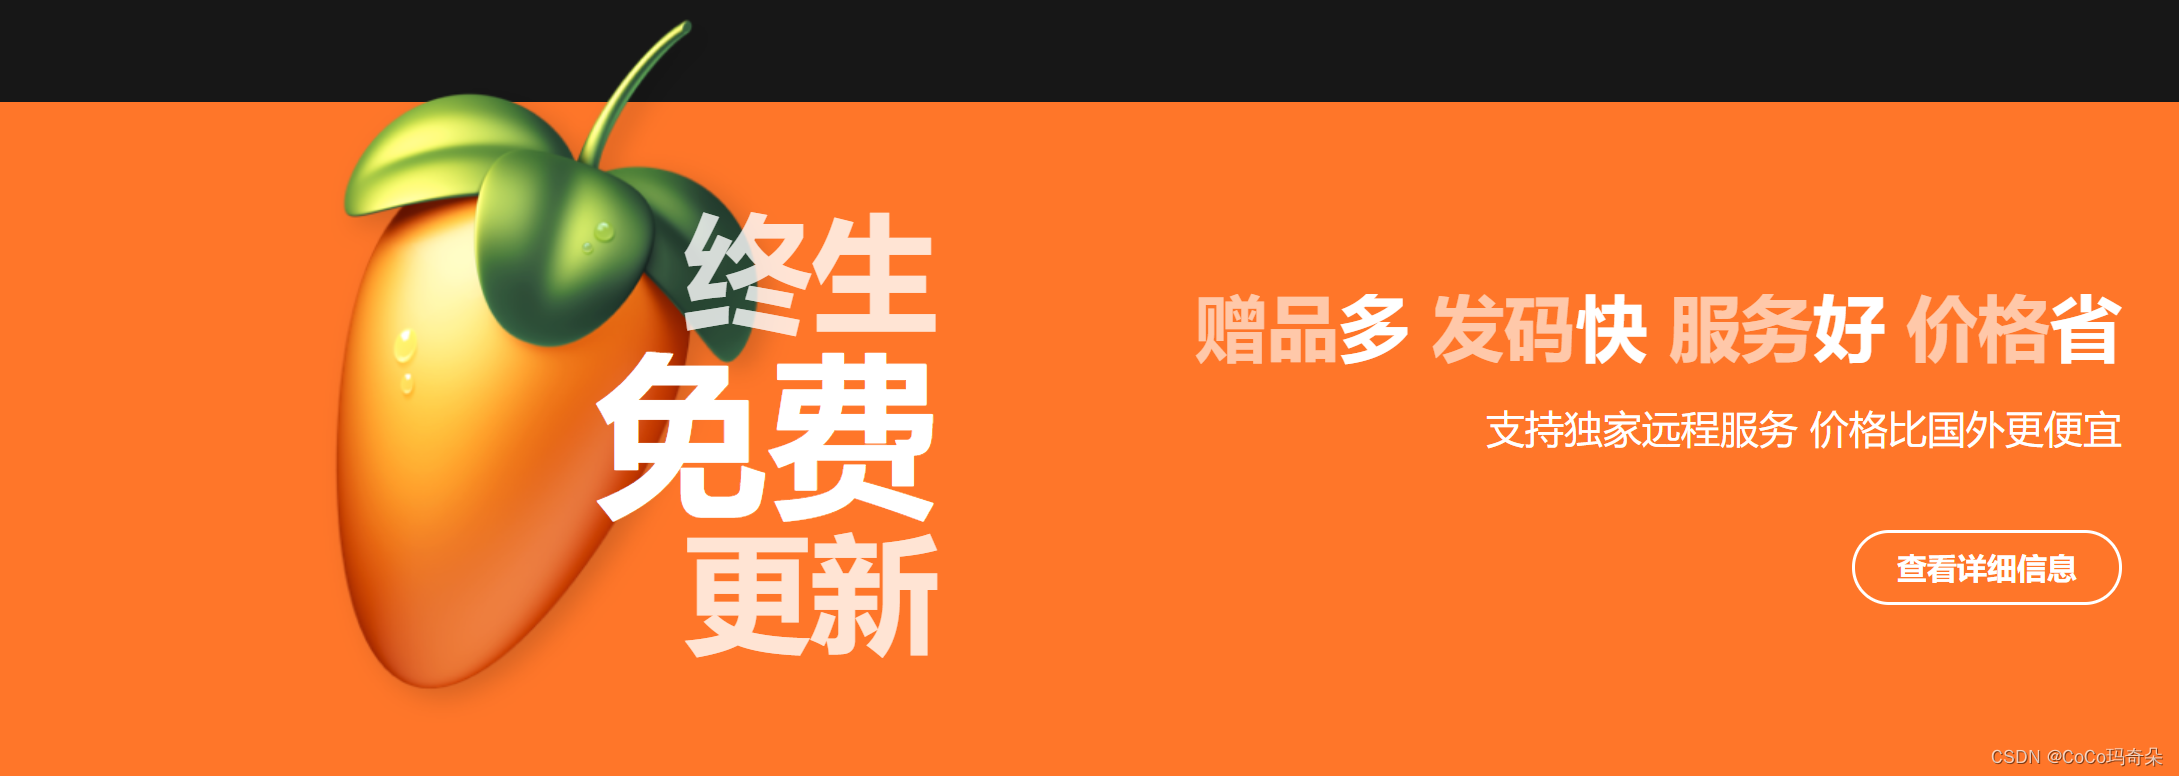 水果FL Studio21.2最新中文版功能特点介绍